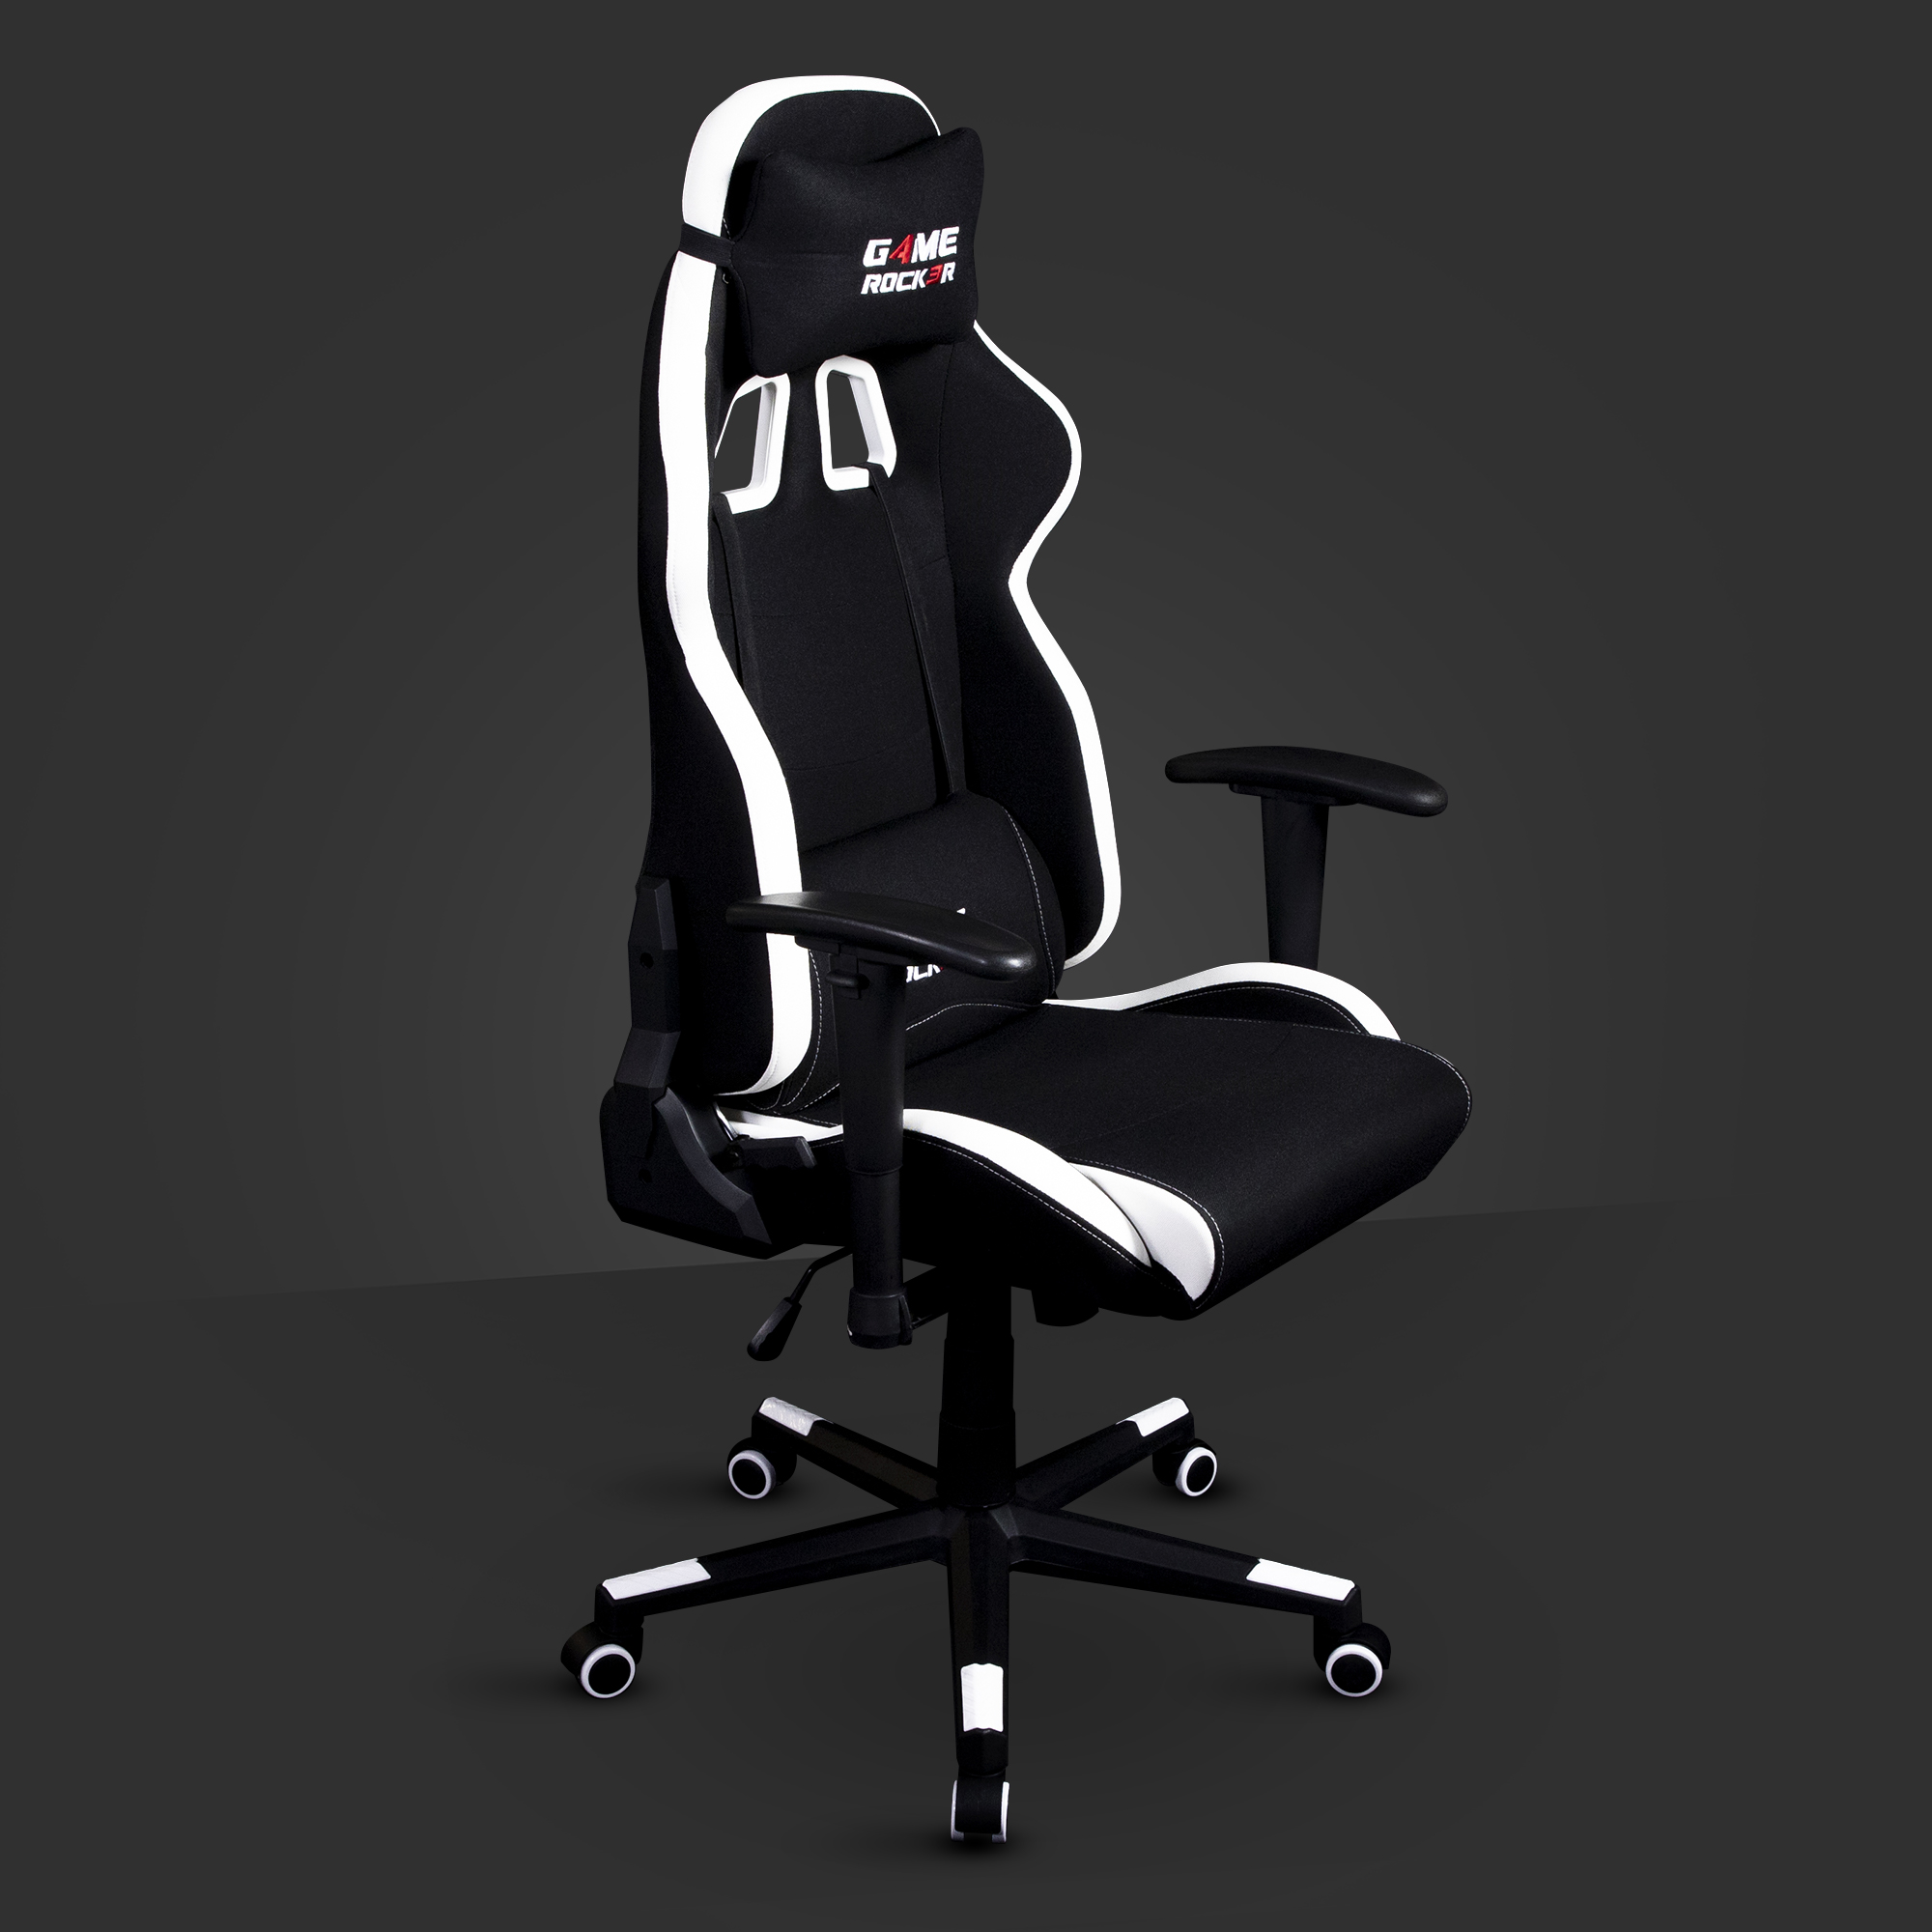 | GAME Gaming ROCKER - G-10 schwarz-weiß-stoff Stuhl